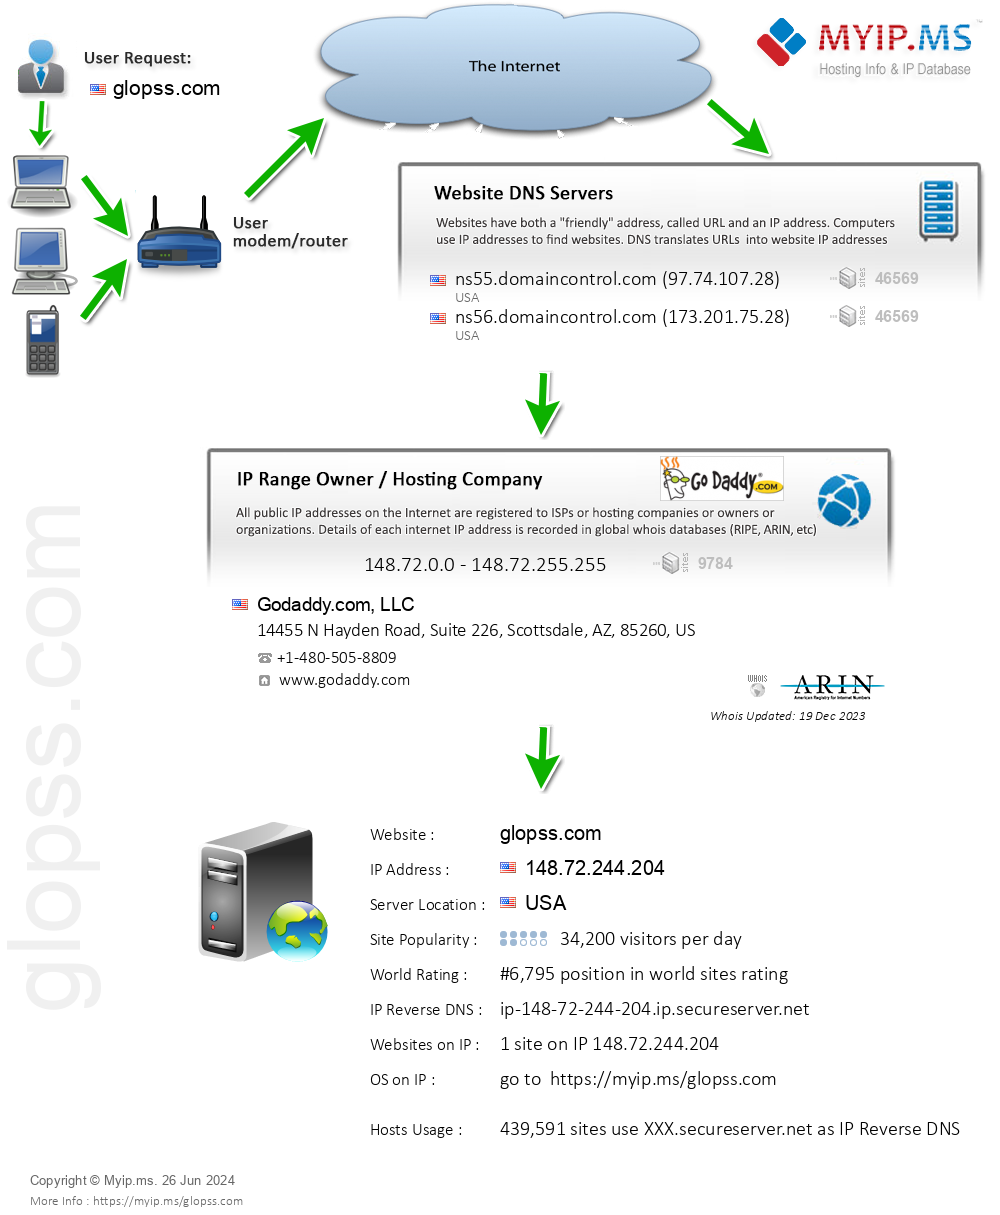 Glopss.com - Website Hosting Visual IP Diagram